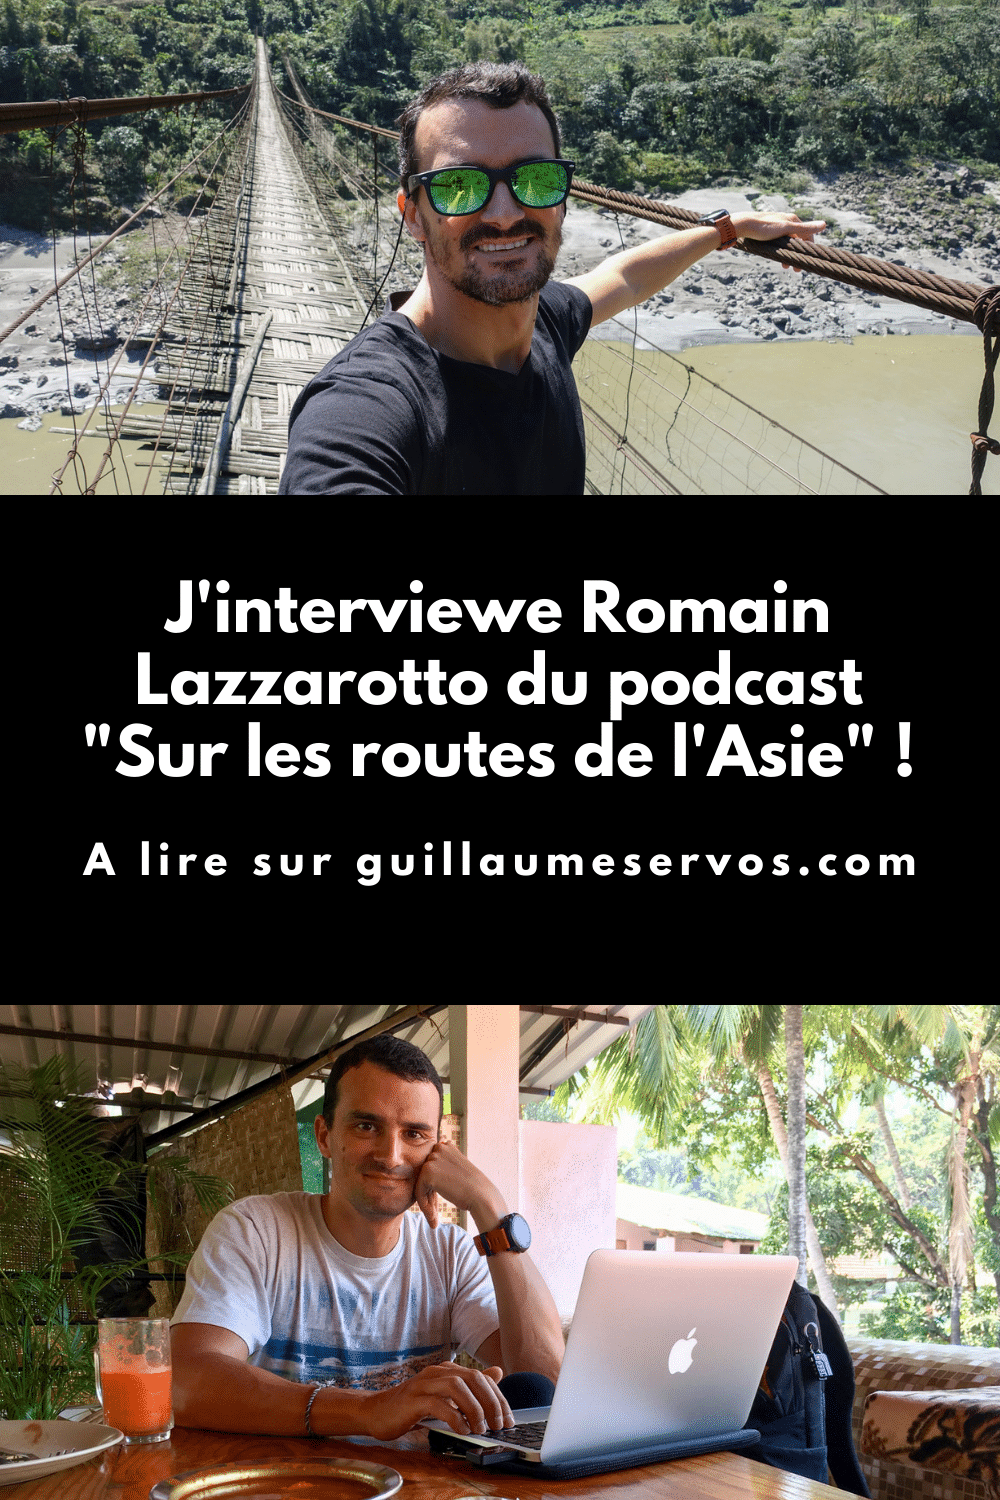 Découvre mon interview avec Romain Lazzarotto du podcast Sur les routes de l'Asie. Au menu : son rapport au podcast, aux réseaux sociaux et au voyage.